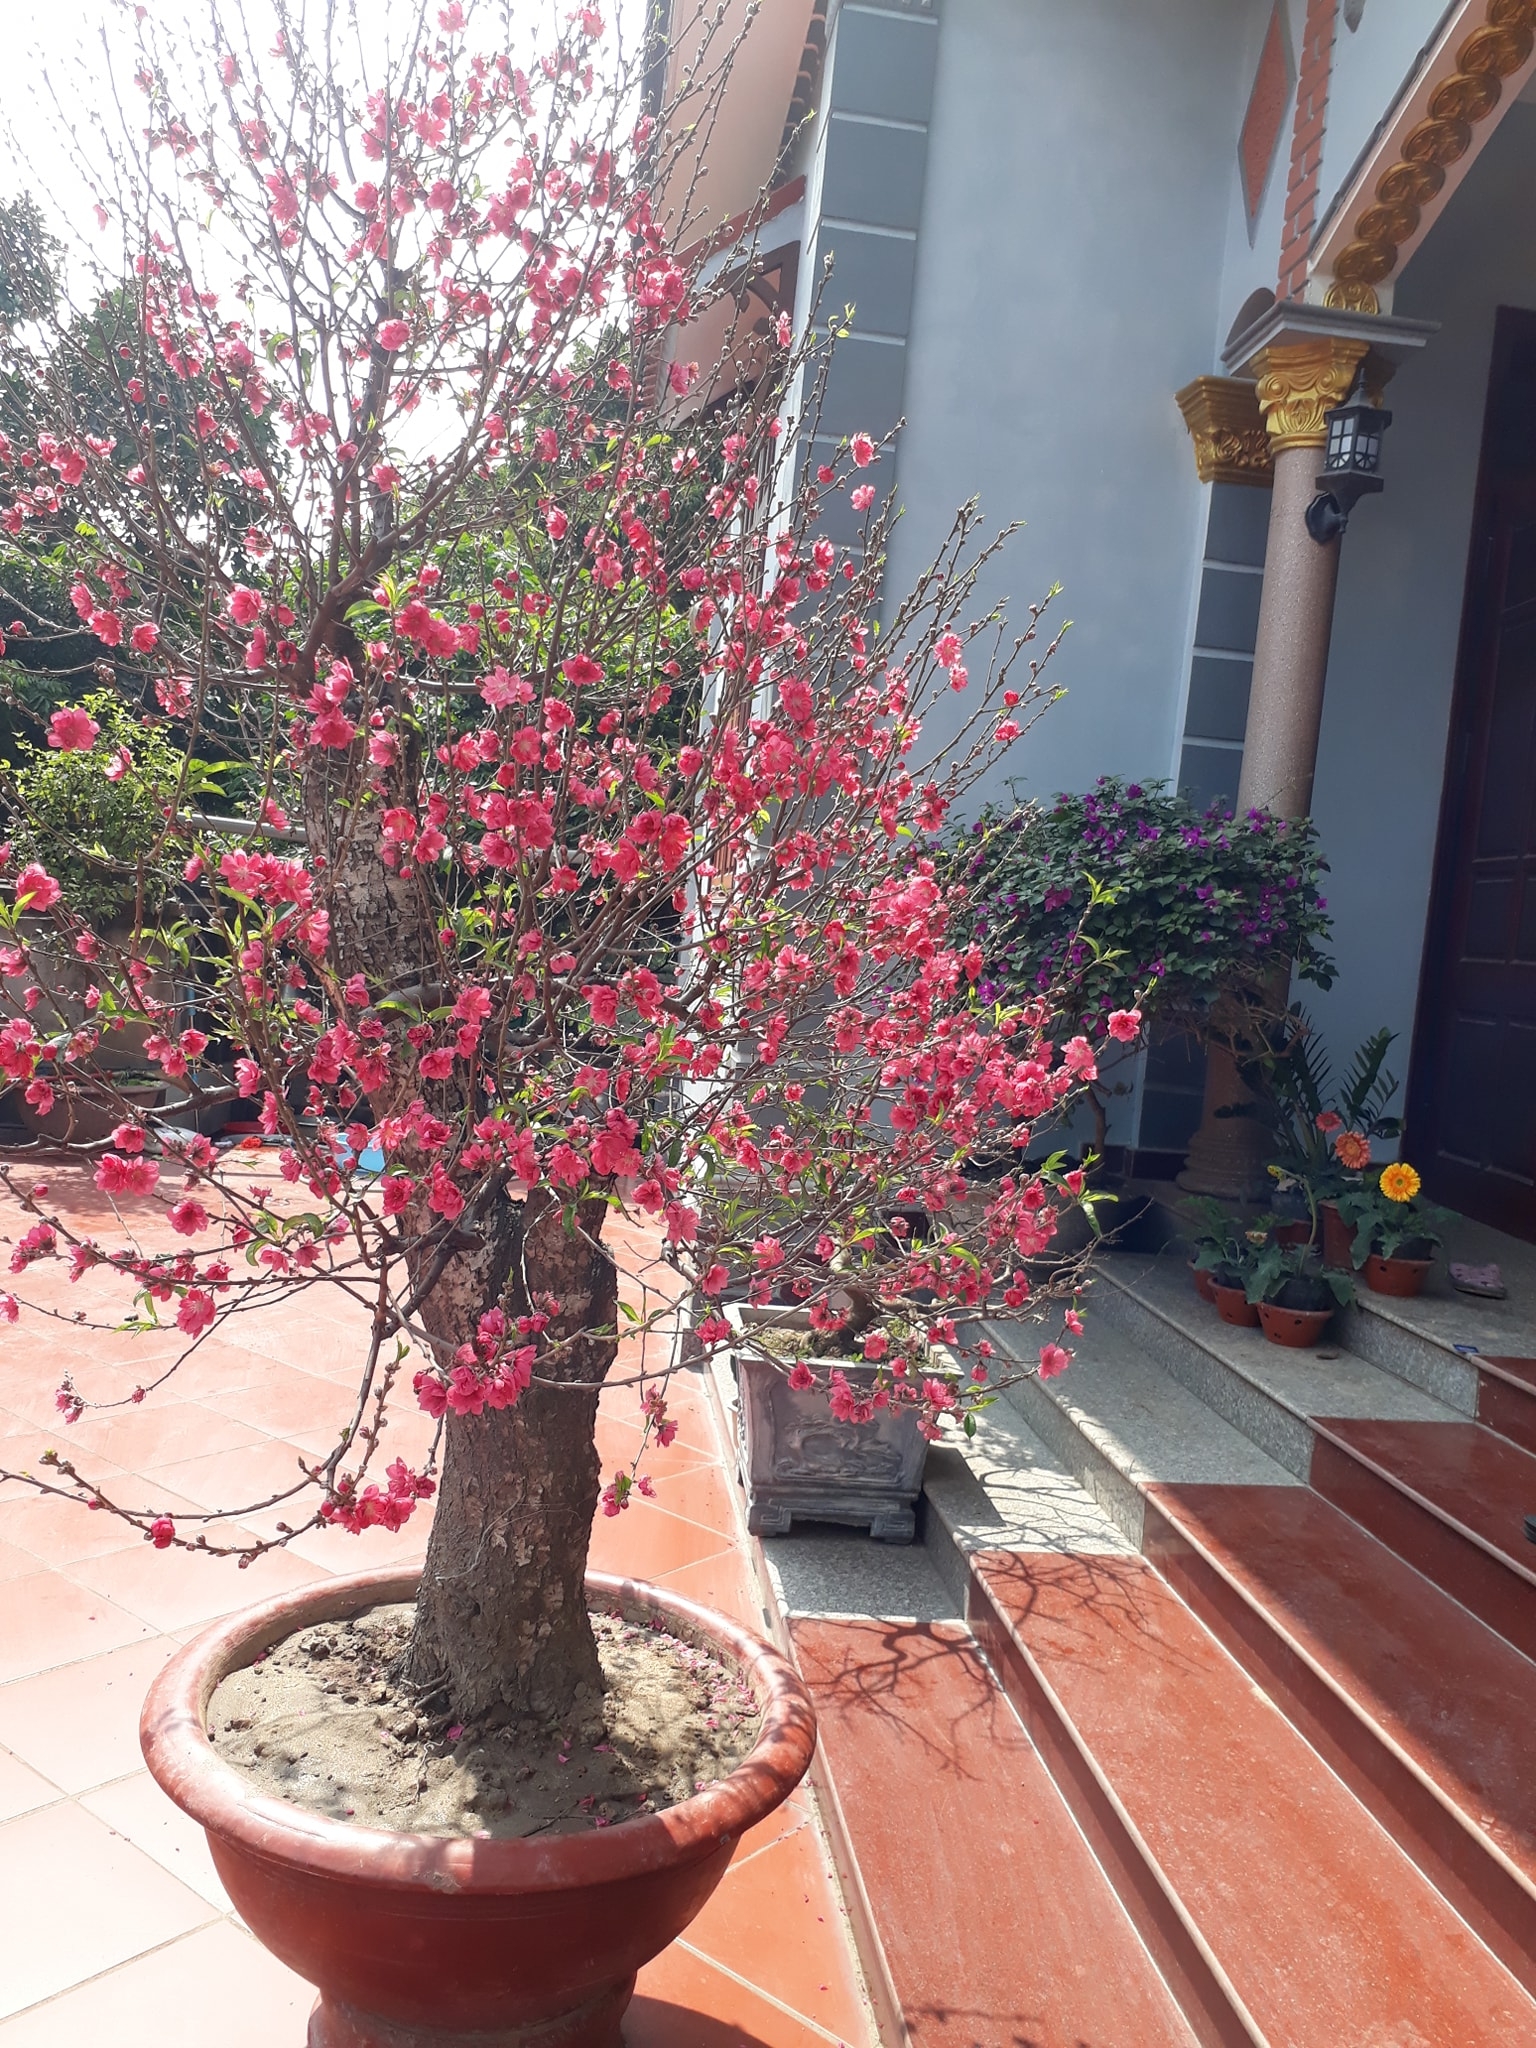 Peach blossoms, flower of vietnamese lunar new year